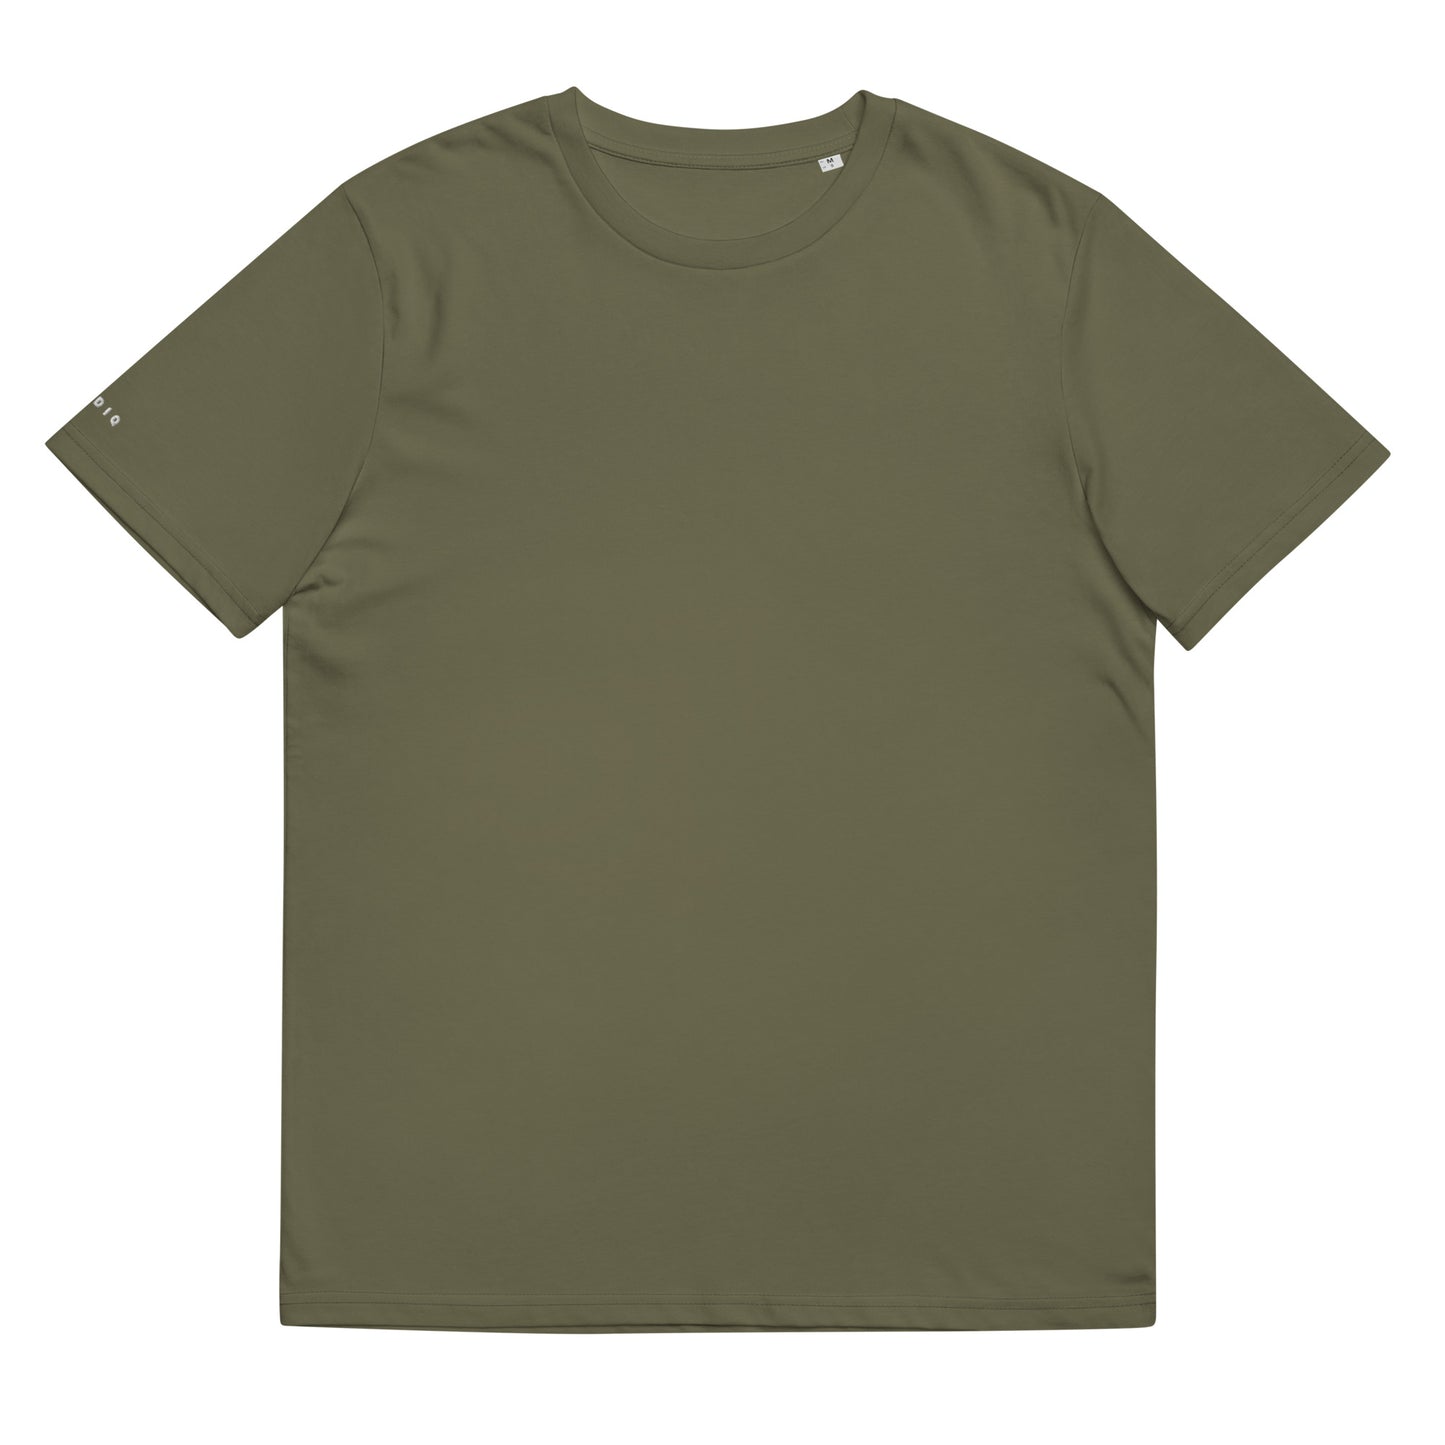 Klediq T-shirt / Khaki